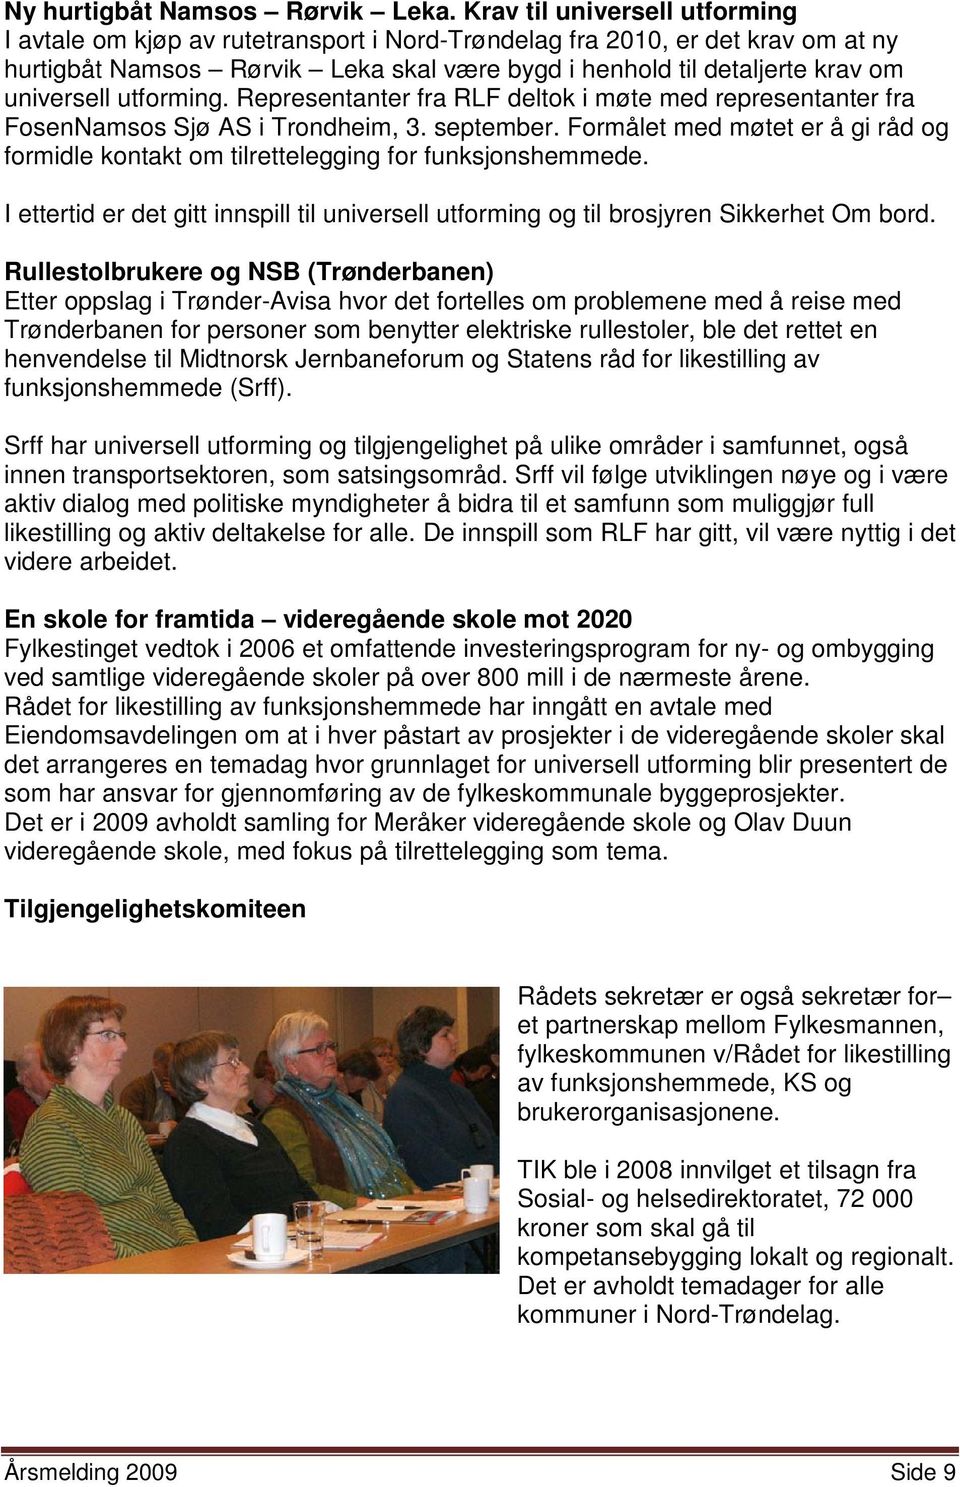 utforming. Representanter fra RLF deltok i møte med representanter fra FosenNamsos Sjø AS i Trondheim, 3. september.